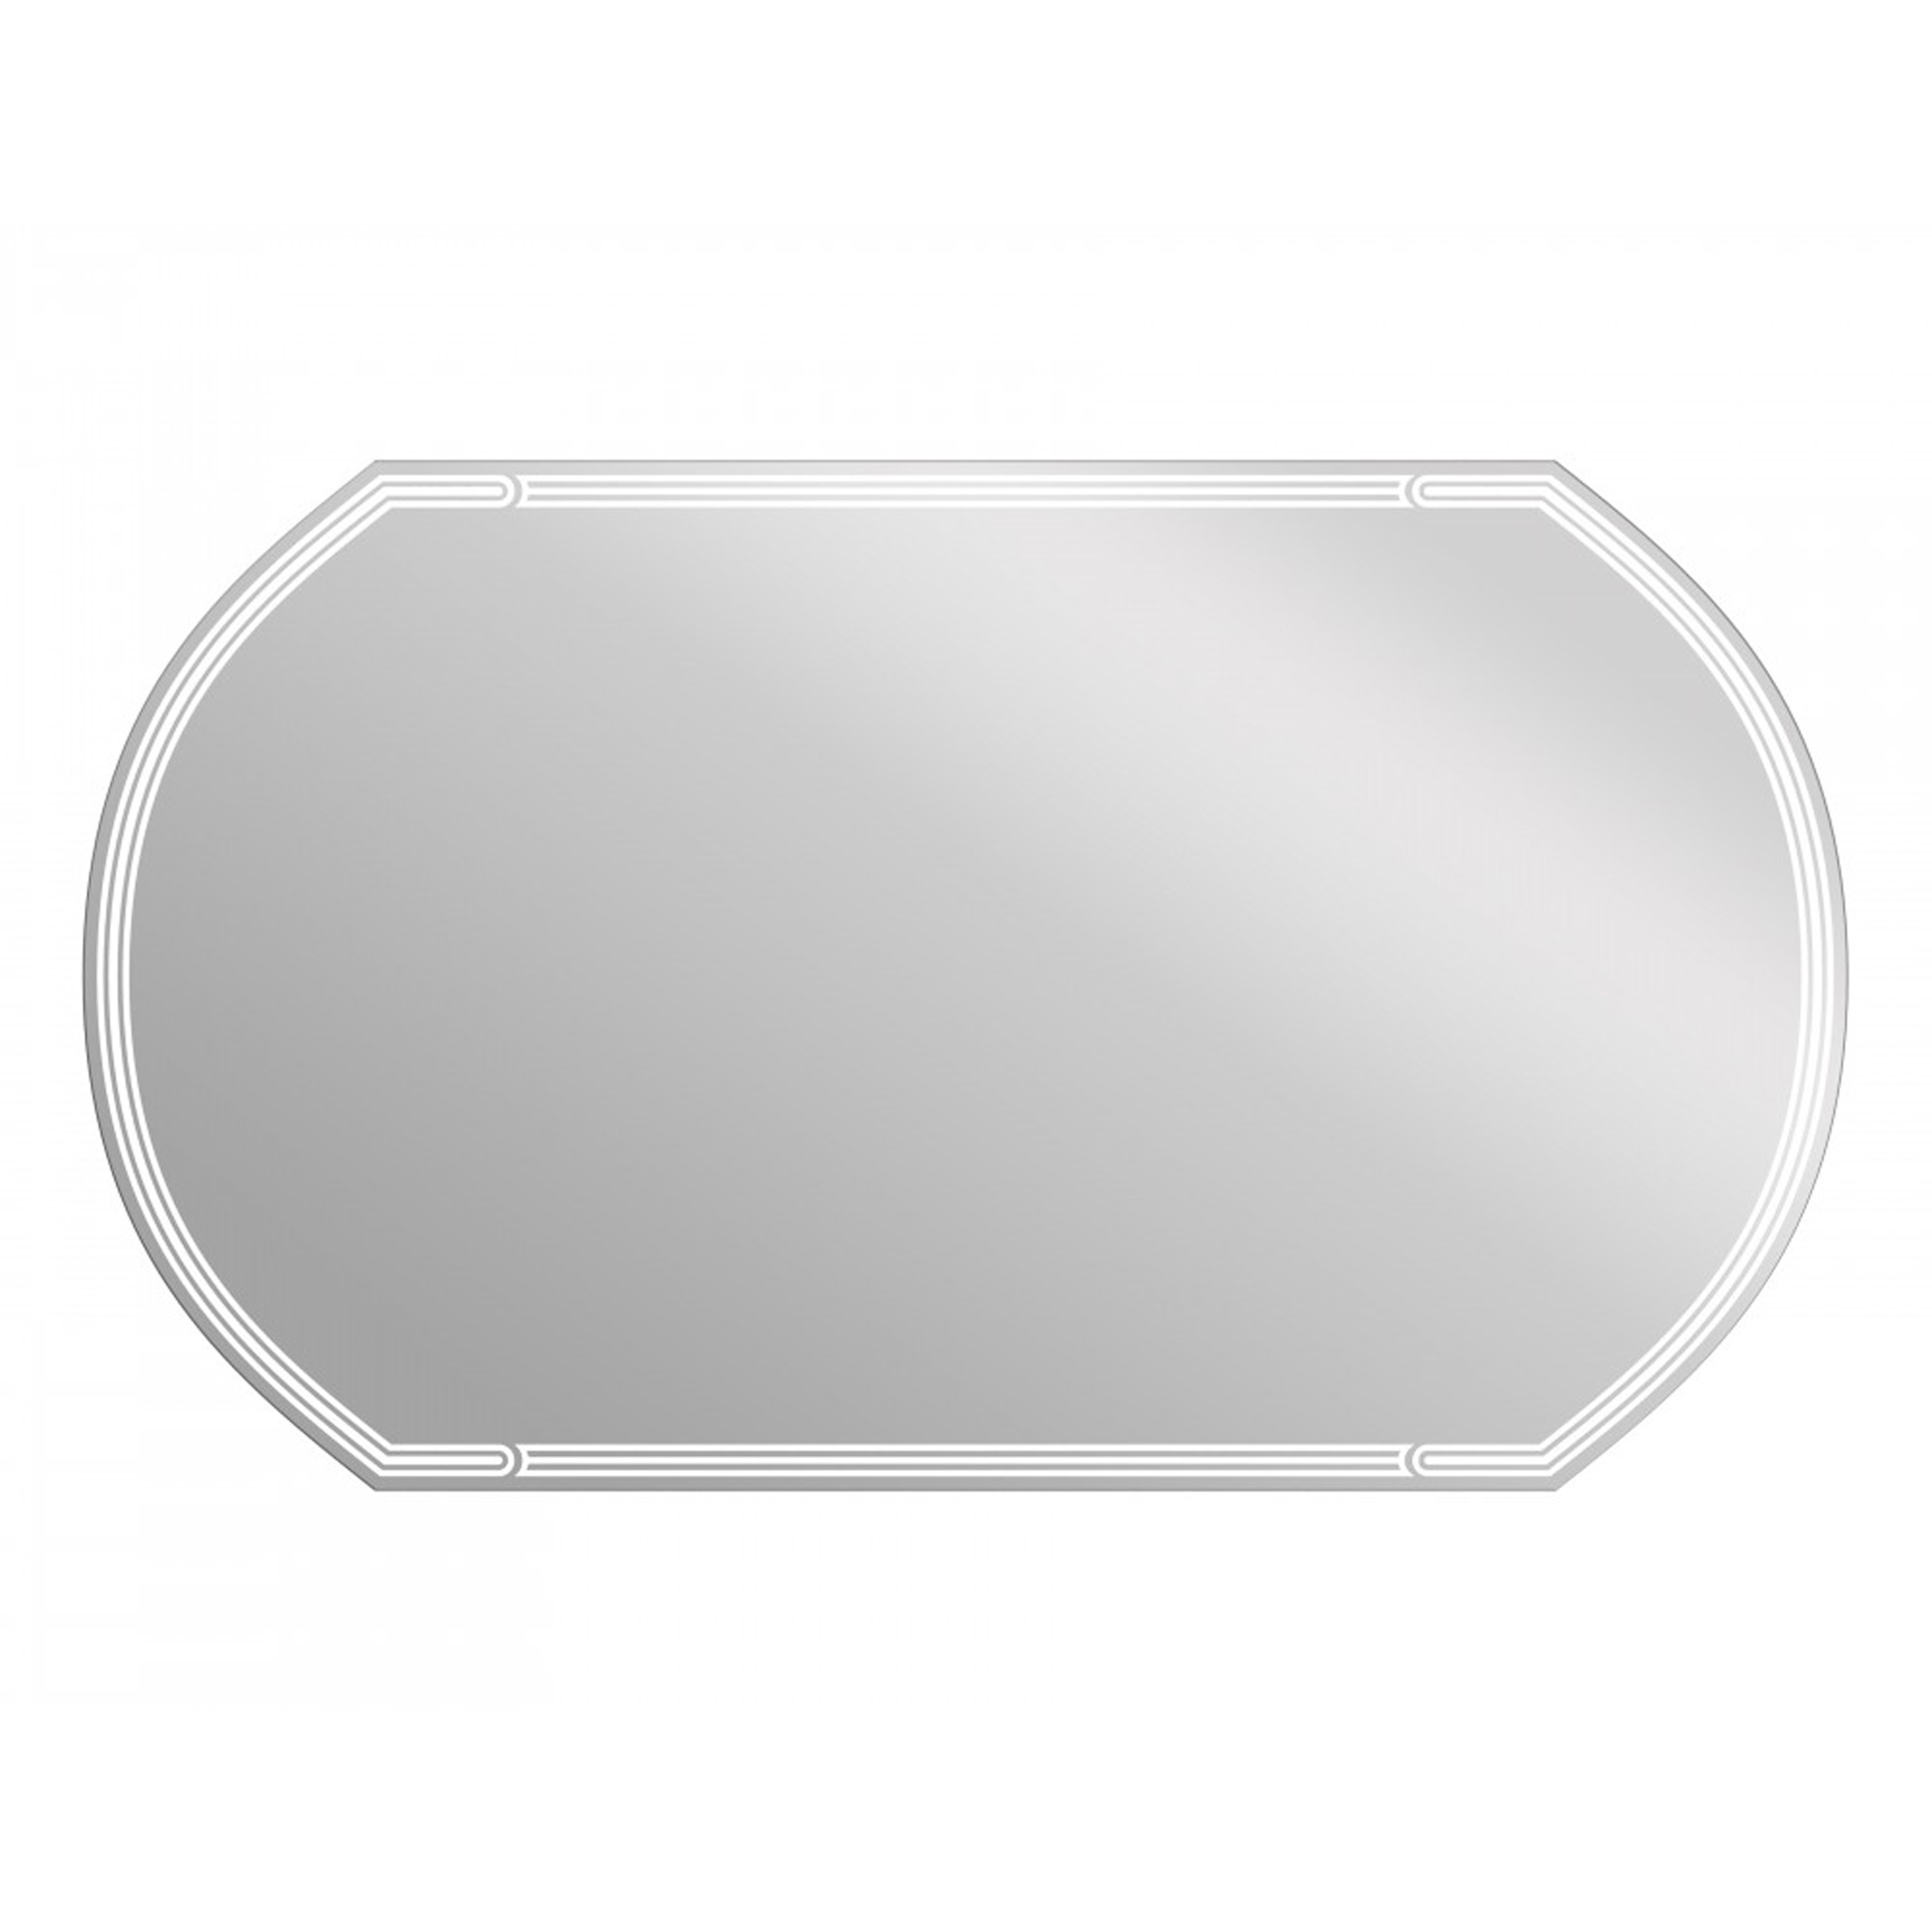 Зеркало Cersanit Led 090 design 120 с подсветкой, цвет без цвета (просто зеркальное полотно) KN-LU-LED090*120-d-Os - фото 1